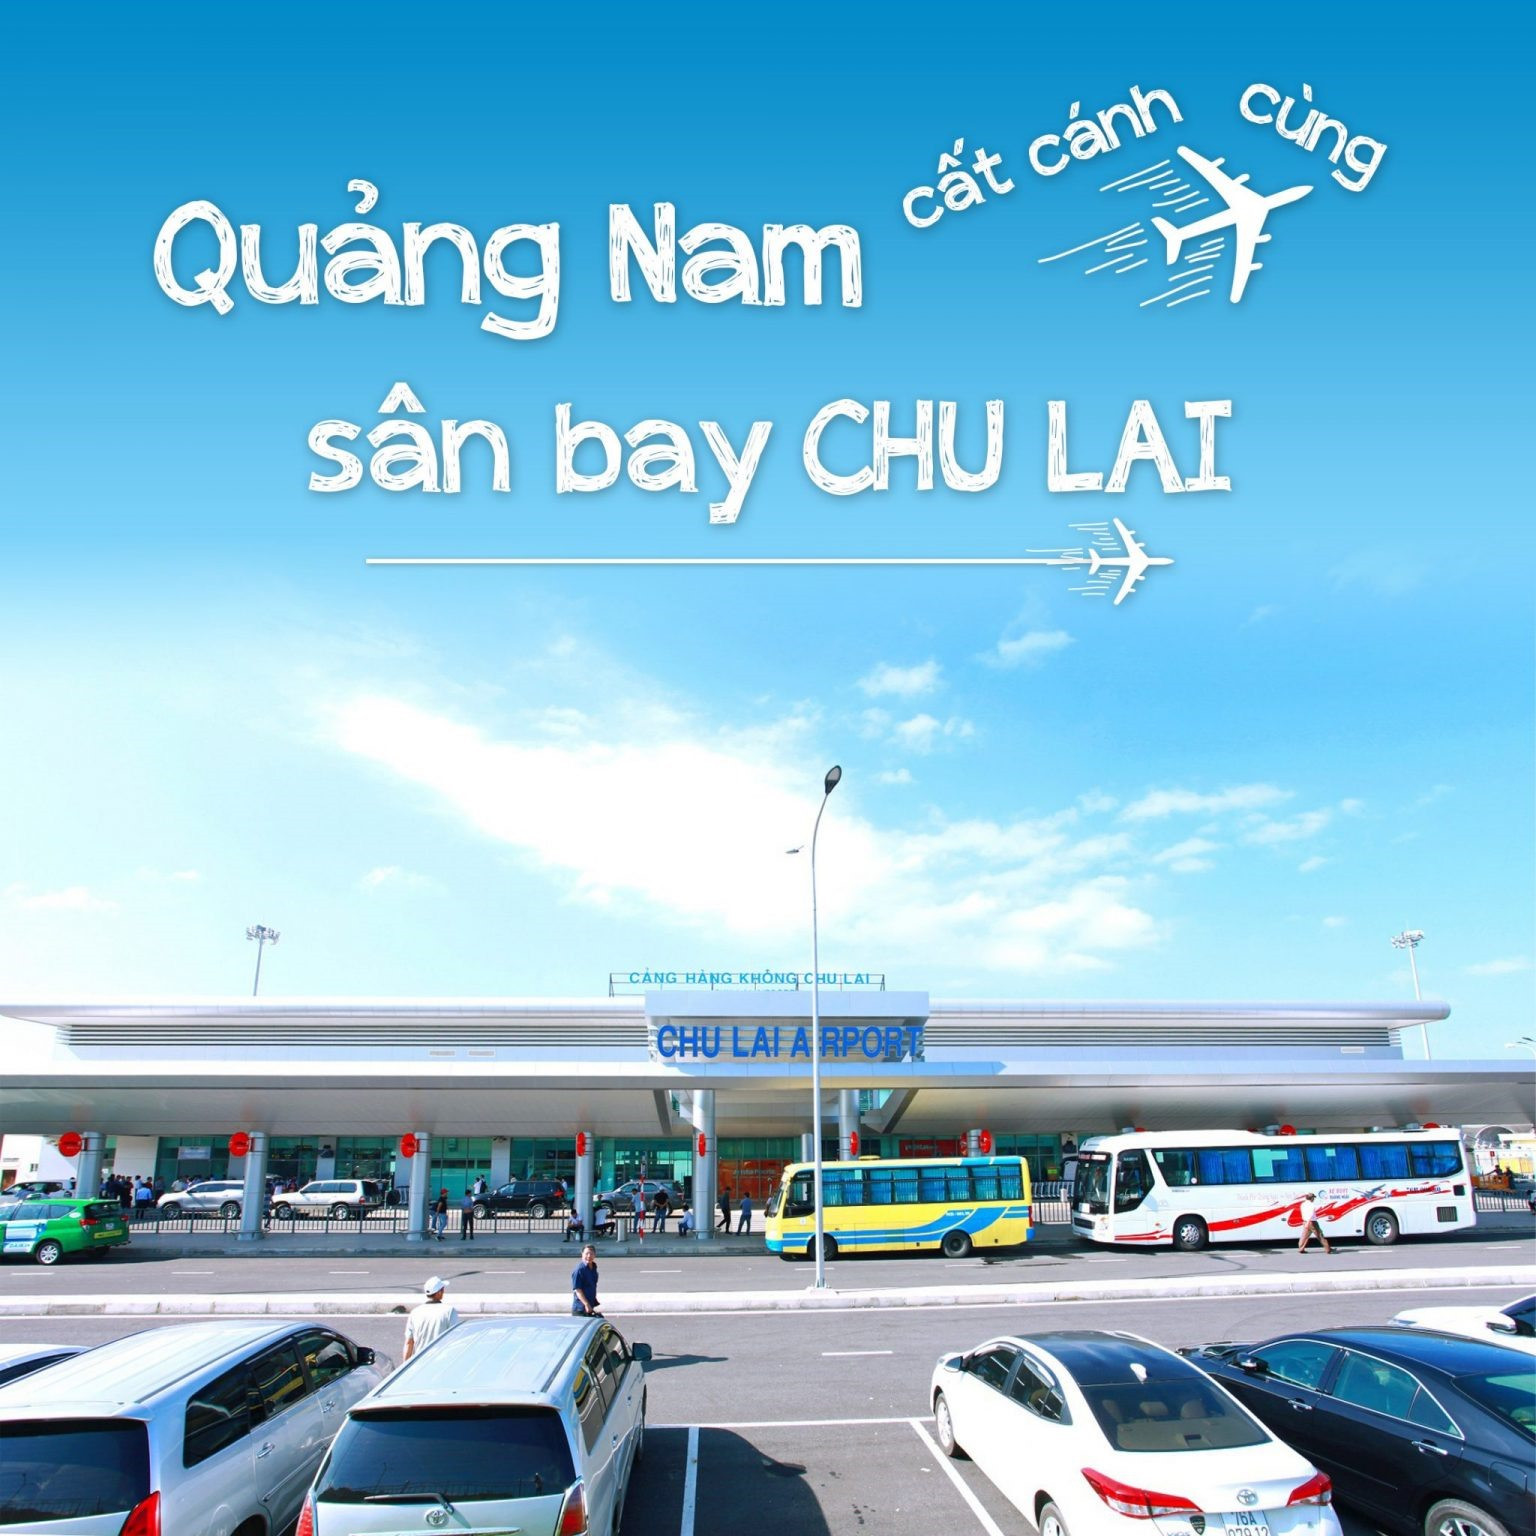 Sân bay Chu Lai nâng cấp quy mô lớn nhất Việt Nam, là trung tâm hàng hóa hàng không tầm vóc Đông Nam Á.